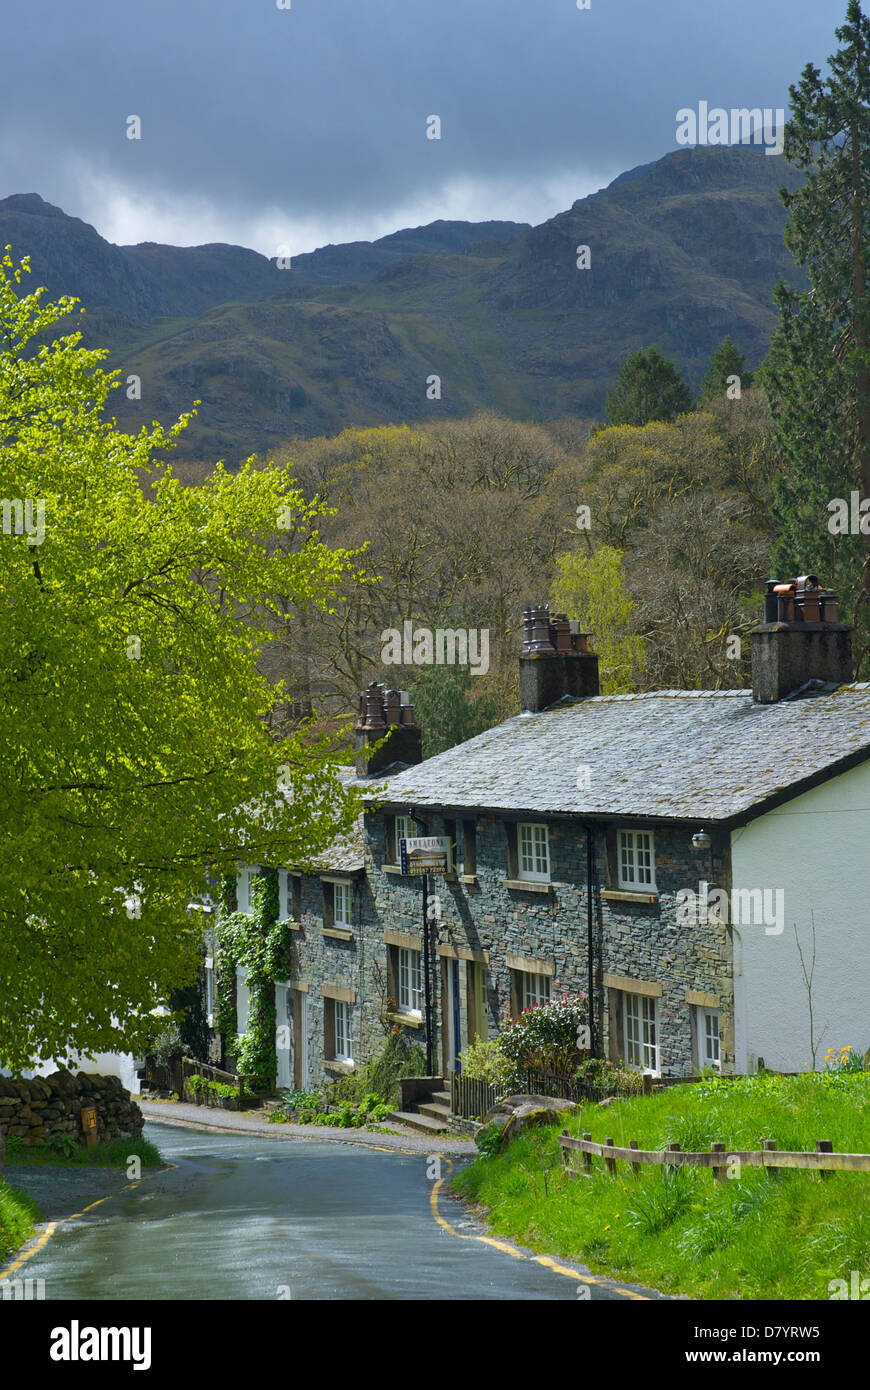 Le village de Seatoller, Borrowdale, Parc National de Lake District, Cumbria, Angleterre, Royaume-Uni Banque D'Images